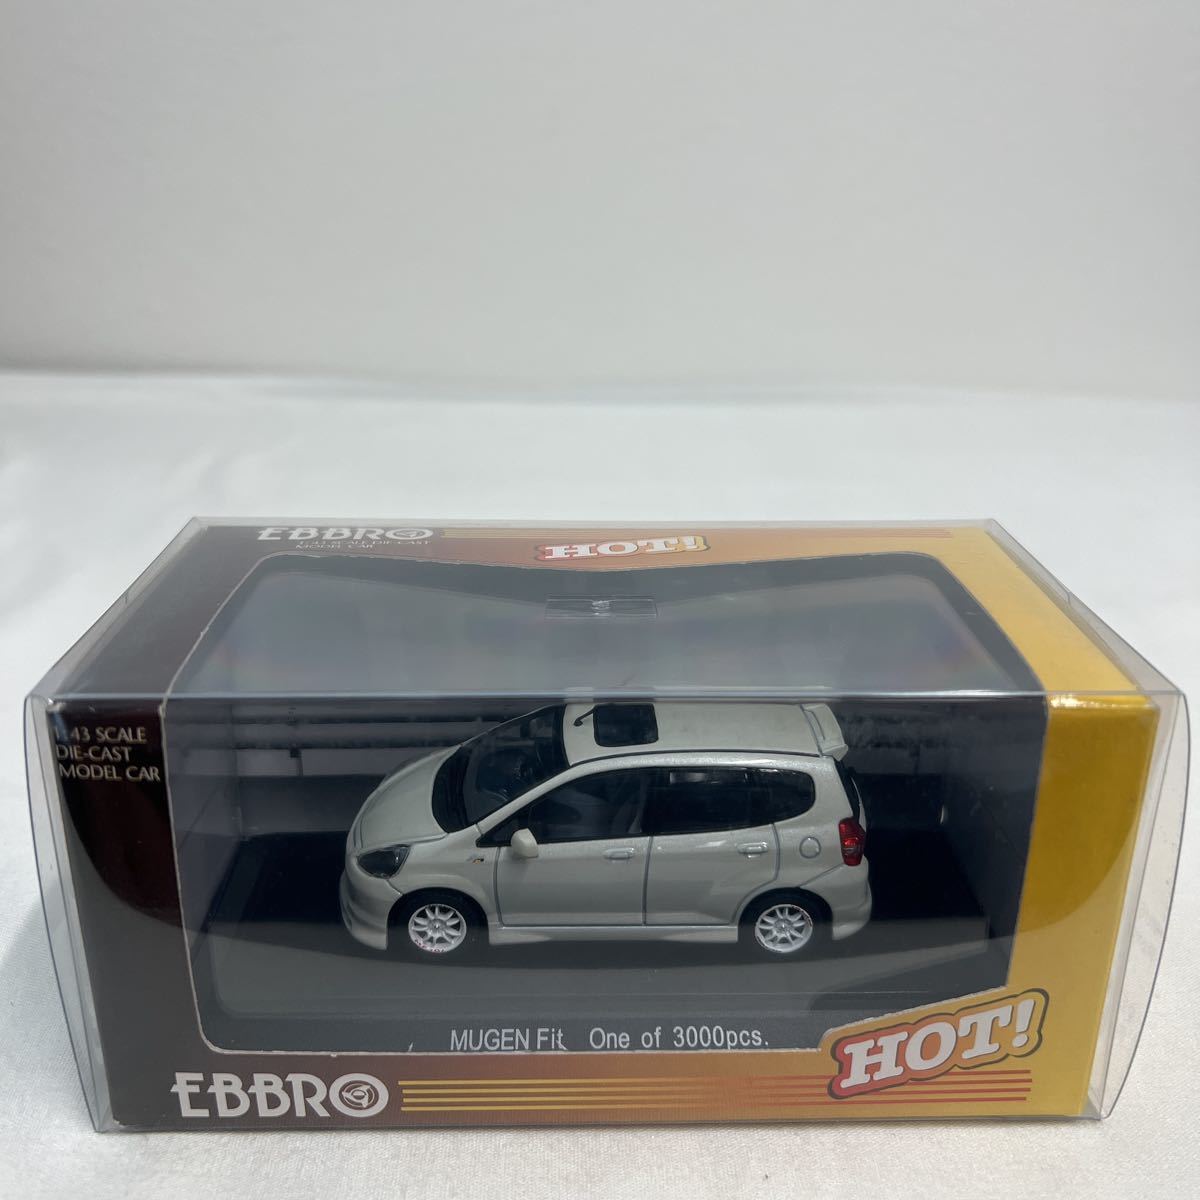 EBBRO 1/43 HONDA MUGEN Fit Pearl White EBBRO Honda Mugen Fit first generation minicar model car gd